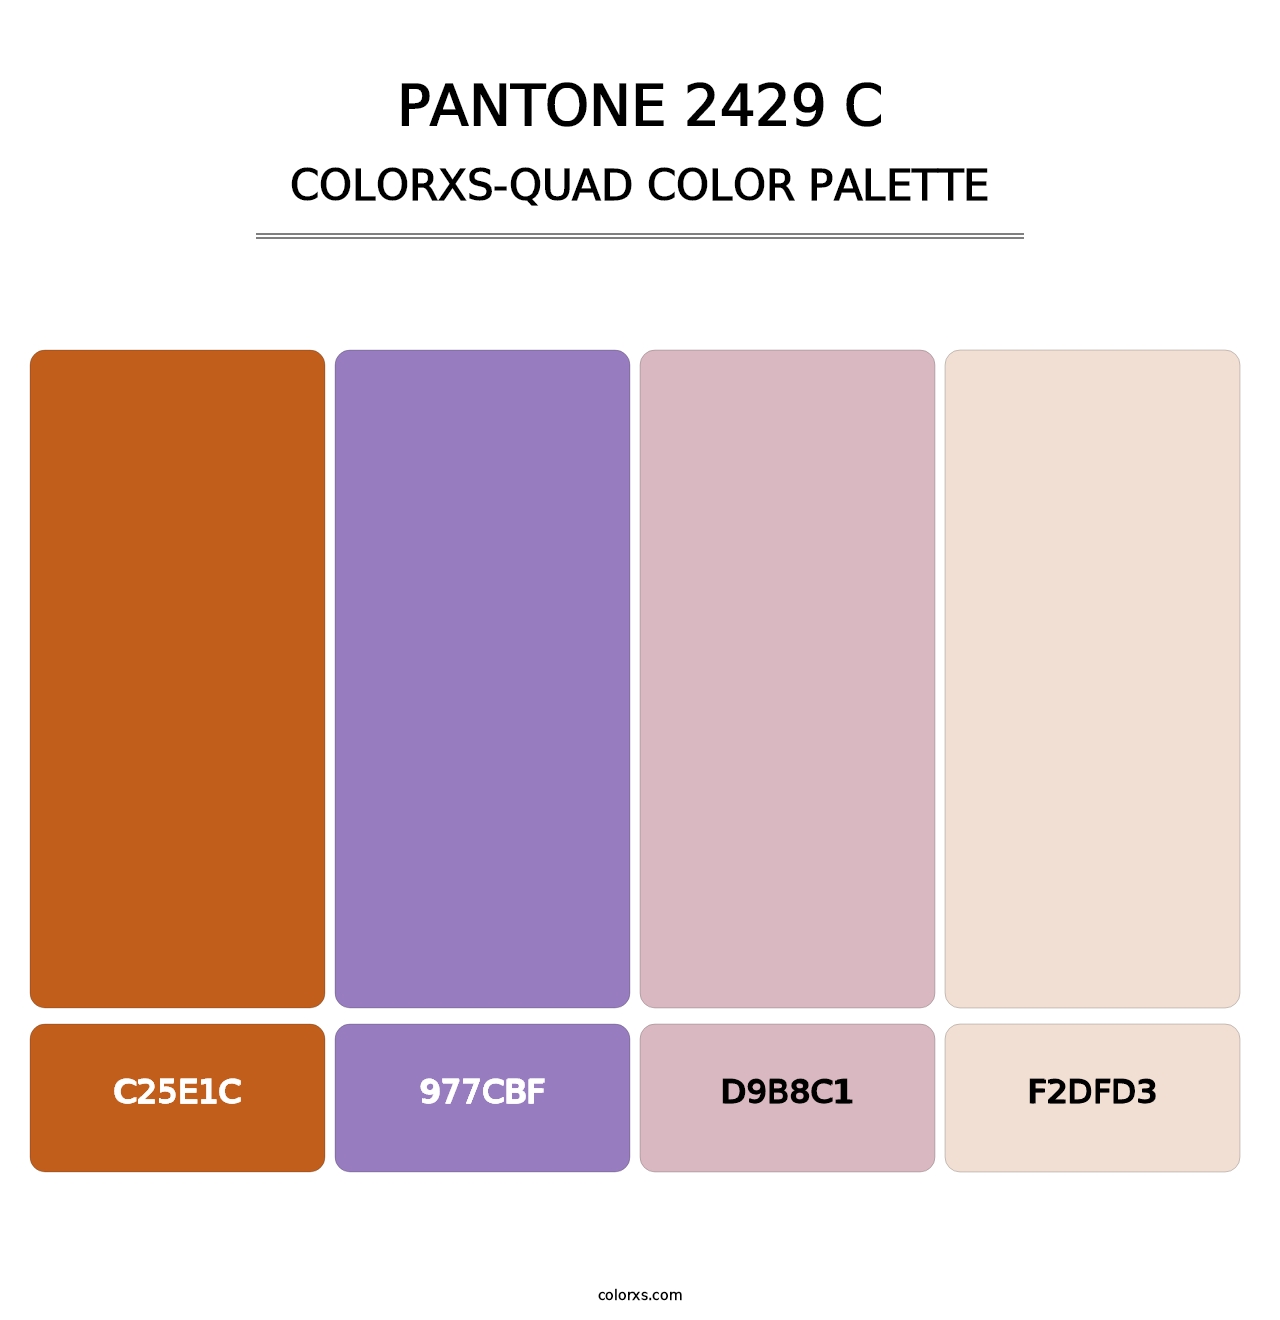 PANTONE 2429 C - Colorxs Quad Palette